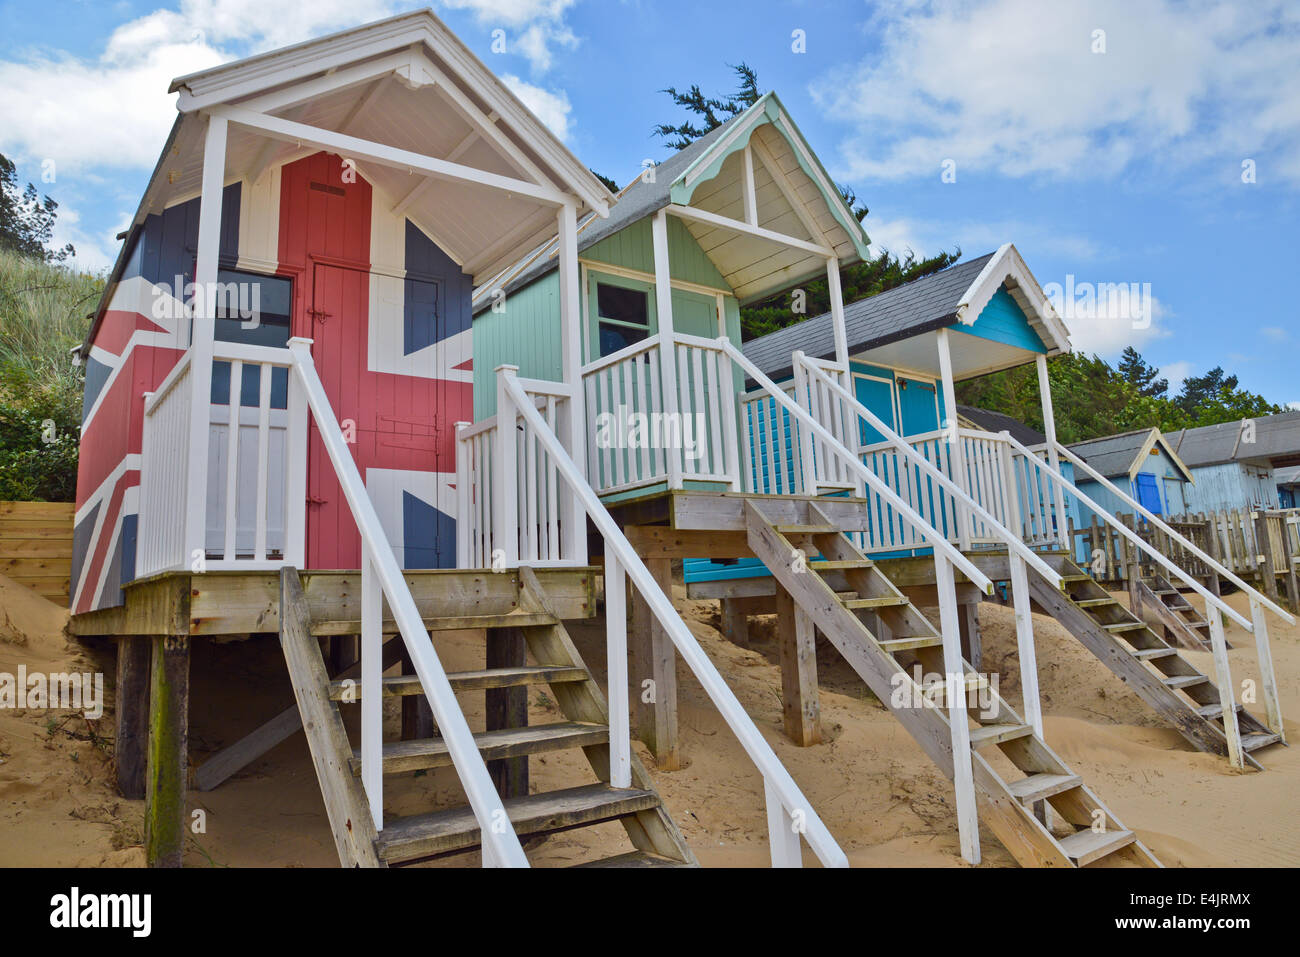 Cabines de plage de Wells Norfolk Royaume Uni Angleterre Banque D'Images